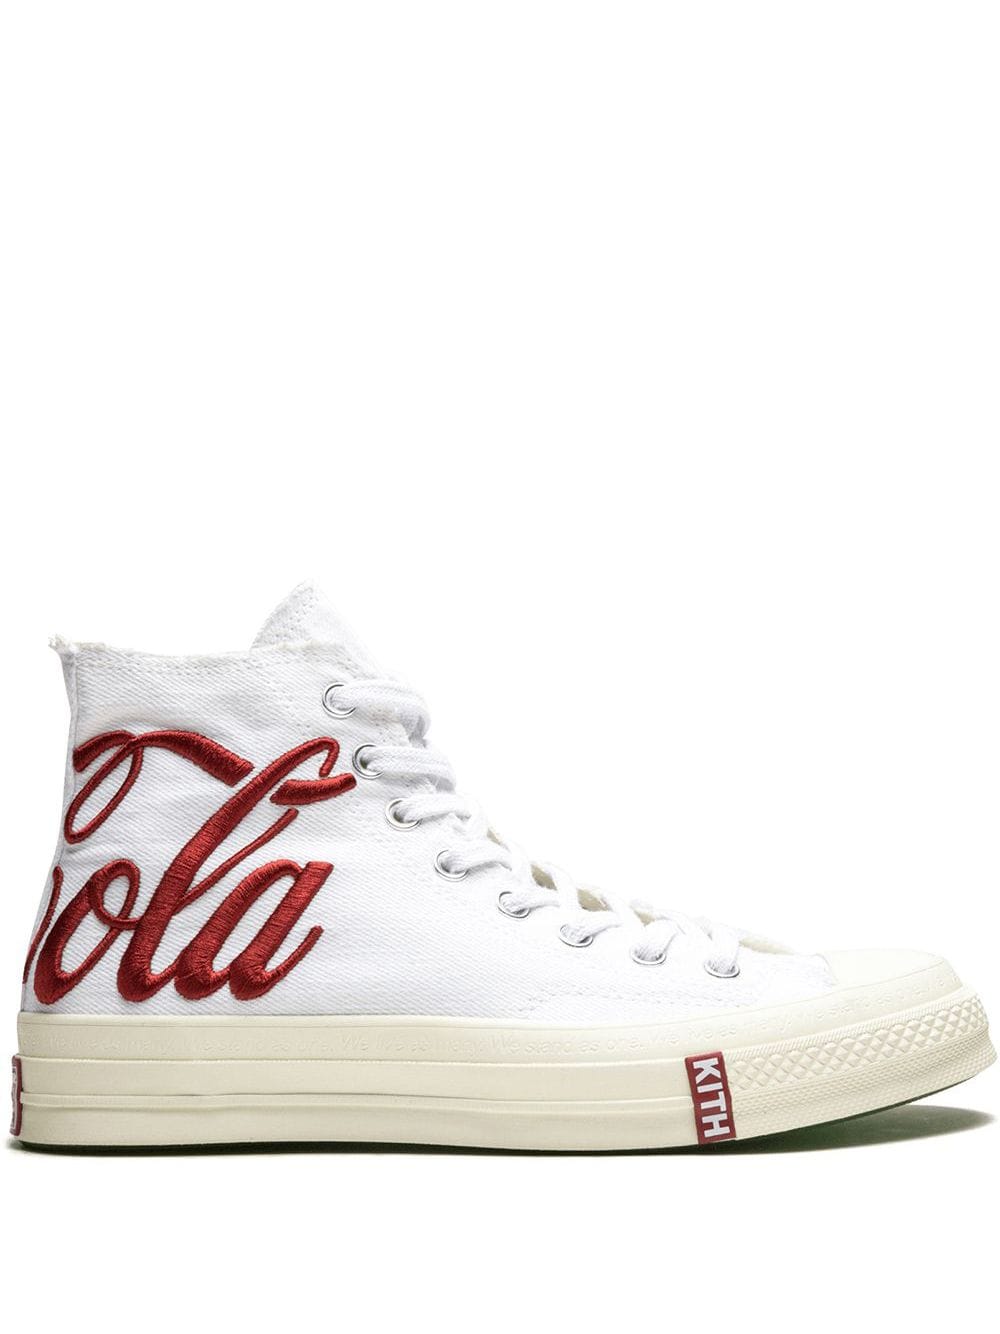 Converse white x Kith x Coca-Cola Chuck 